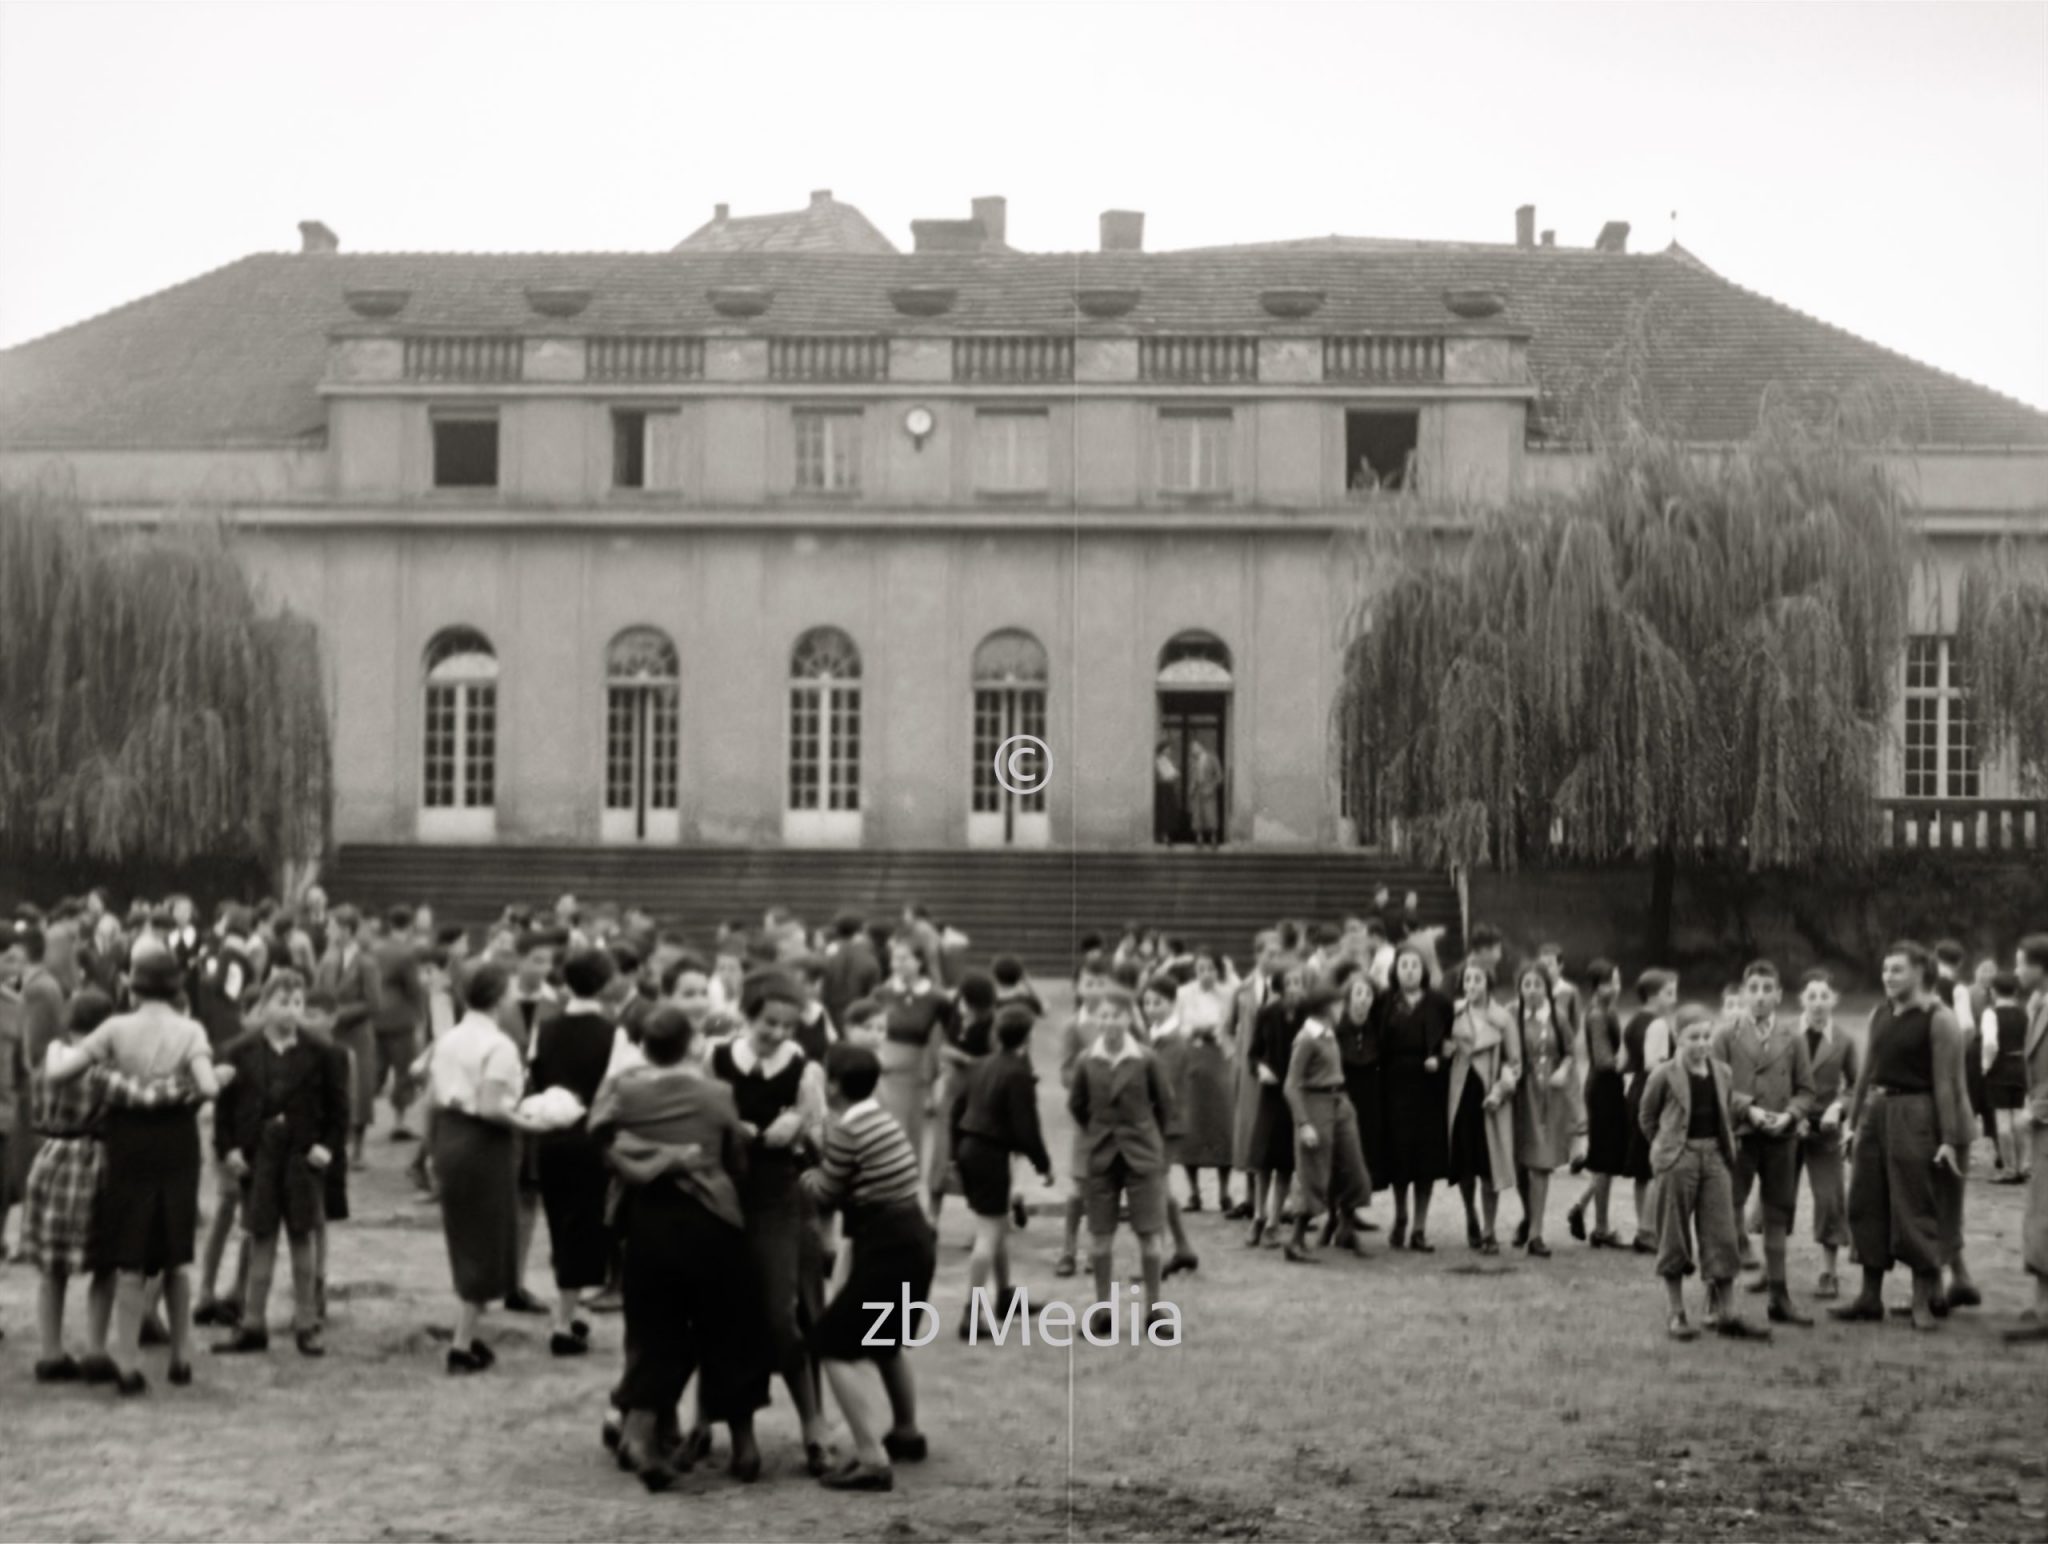 Pausenhof. Jüdische Goldschmidtschule in Berlin 1937